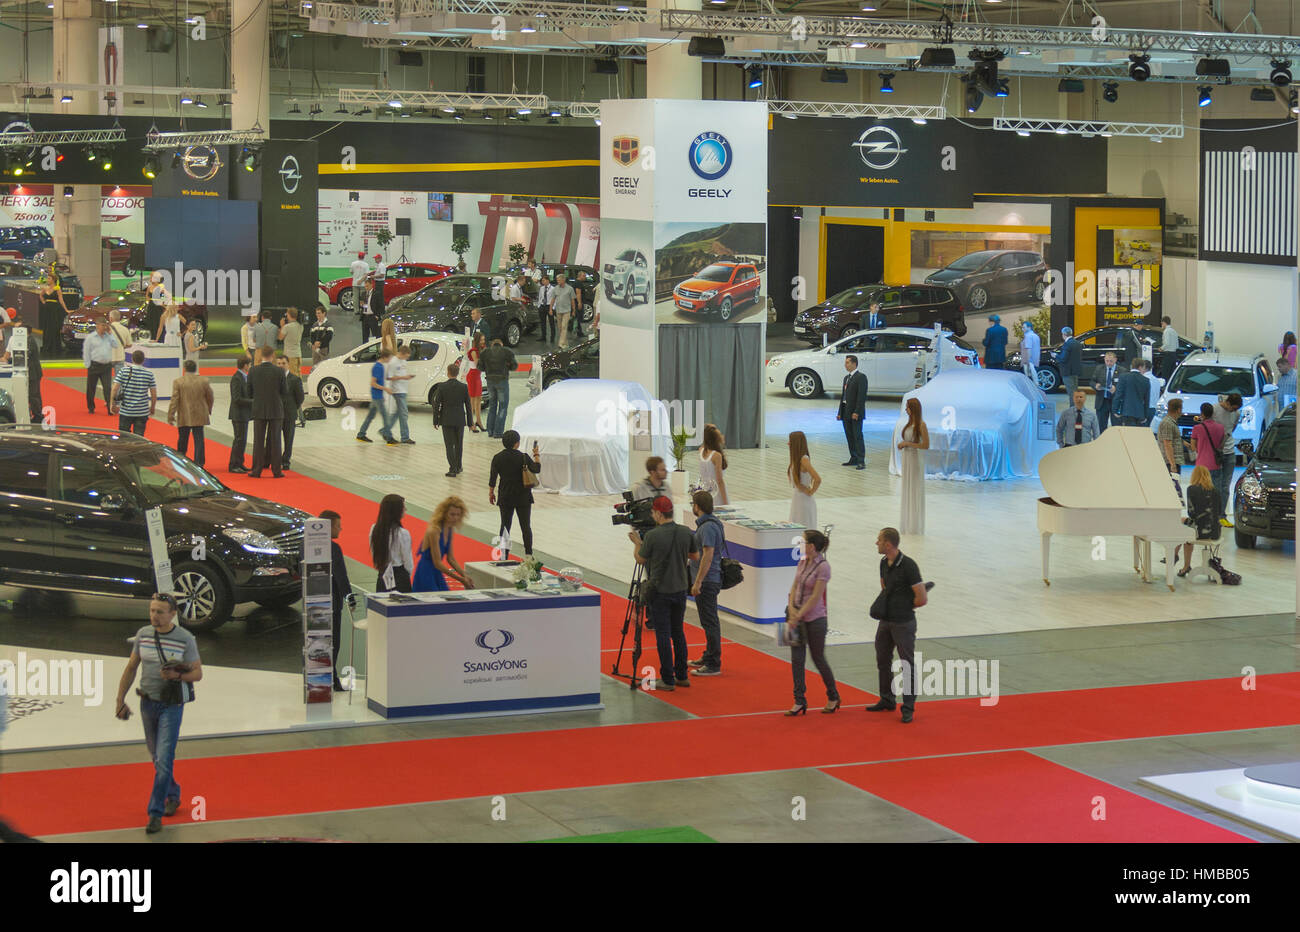 KIEV, UCRAINA - 29 Maggio: visitatori visitare esposizioni di boothes internazionali diversi costruttori di automobili con i nuovi modelli di automobili sul display dell' ISA 2013 Kyi Foto Stock